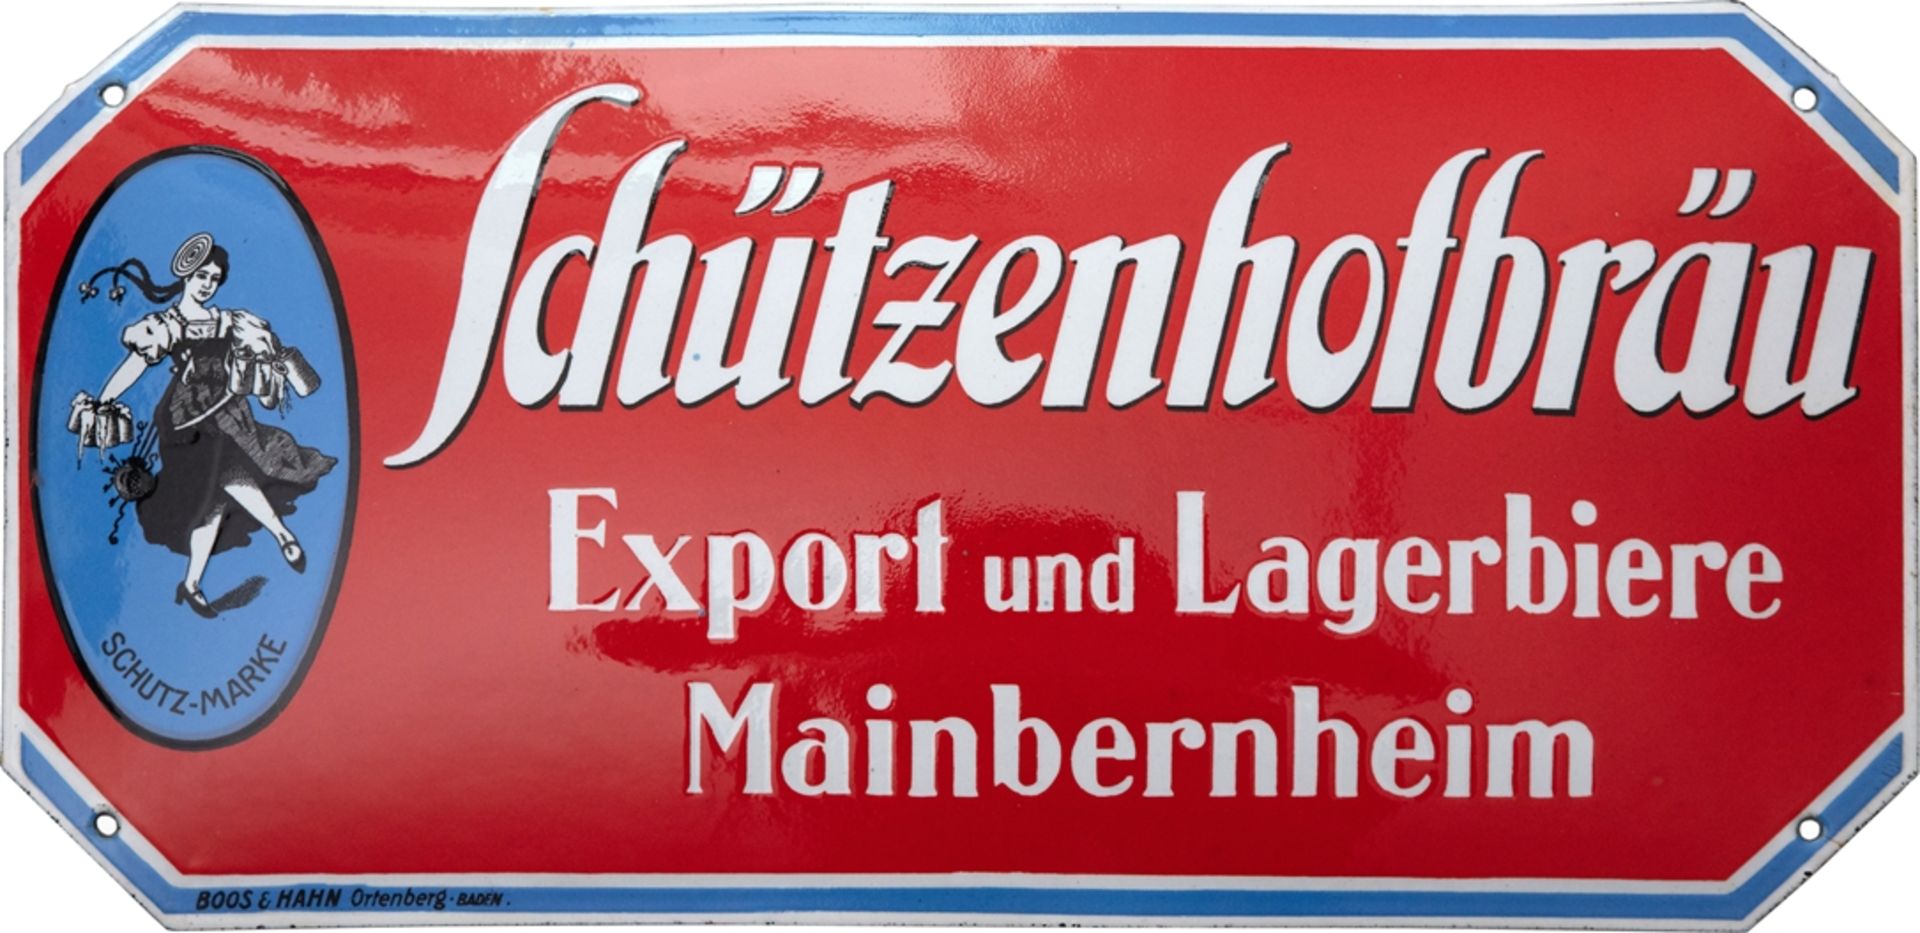 Emailschild Schützenhofbräu, Traumzustand! Mainbernheim bei Kitzingen, um 1920